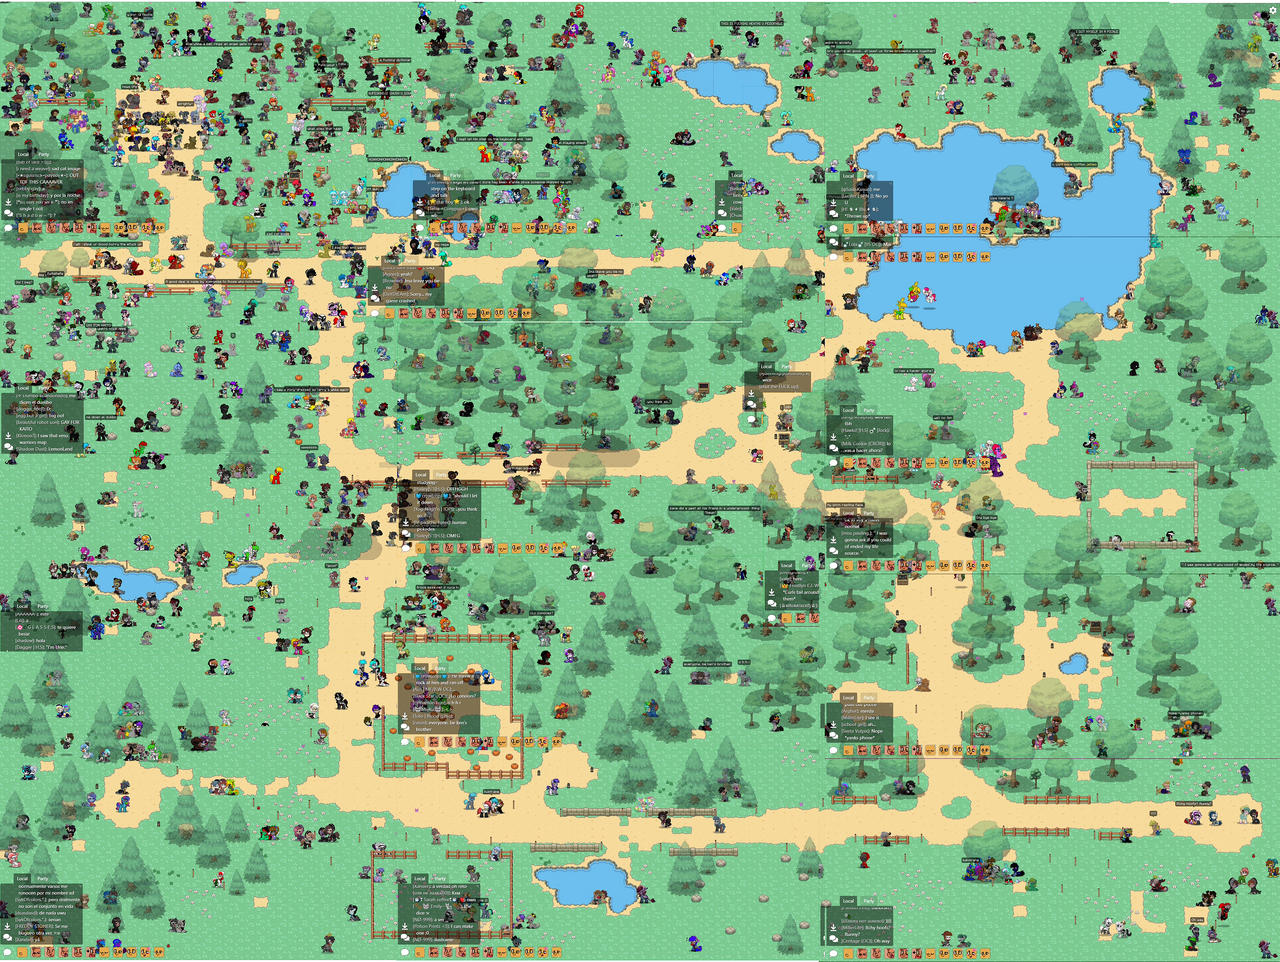 Ponytown Map By Smothys Dd4iw5x Fullview ?token=eyJ0eXAiOiJKV1QiLCJhbGciOiJIUzI1NiJ9.eyJzdWIiOiJ1cm46YXBwOjdlMGQxODg5ODIyNjQzNzNhNWYwZDQxNWVhMGQyNmUwIiwiaXNzIjoidXJuOmFwcDo3ZTBkMTg4OTgyMjY0MzczYTVmMGQ0MTVlYTBkMjZlMCIsIm9iaiI6W1t7ImhlaWdodCI6Ijw9OTYyIiwicGF0aCI6IlwvZlwvNjBlMmJhYTYtMDBiZC00ZTRhLWFiMWMtMTk1YWYyM2VhMzNlXC9kZDRpdzV4LTdmNzM1NDNkLWU0MTYtNDUzMi05NWMxLWM3ZmMzZjdhNzY3My5qcGciLCJ3aWR0aCI6Ijw9MTI4MCJ9XV0sImF1ZCI6WyJ1cm46c2VydmljZTppbWFnZS5vcGVyYXRpb25zIl19.p2bBjKkD R4RdAvWAdM2KwAQfds7Pk4G5oLOlIaUI8o